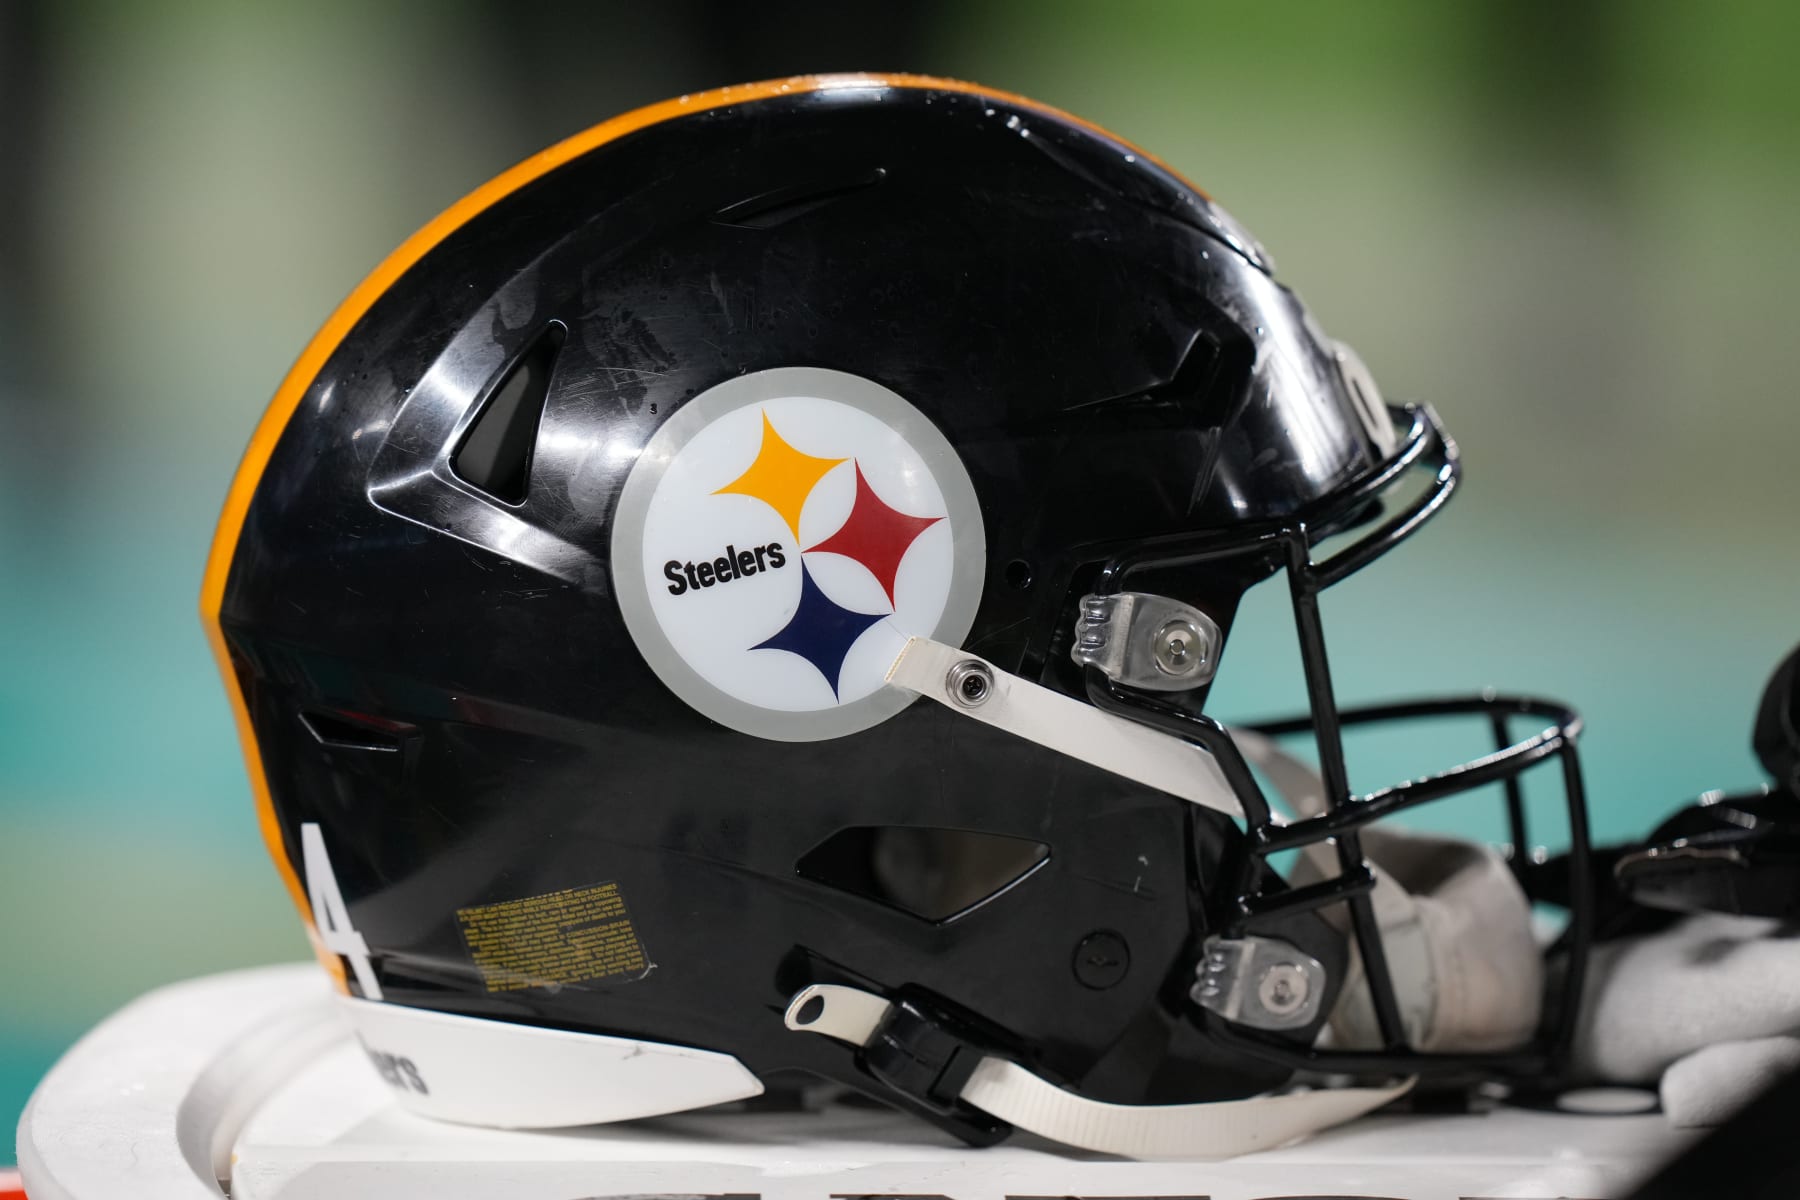 Toby Ndukwe - Pittsburgh Steelers Linebacker - ESPN